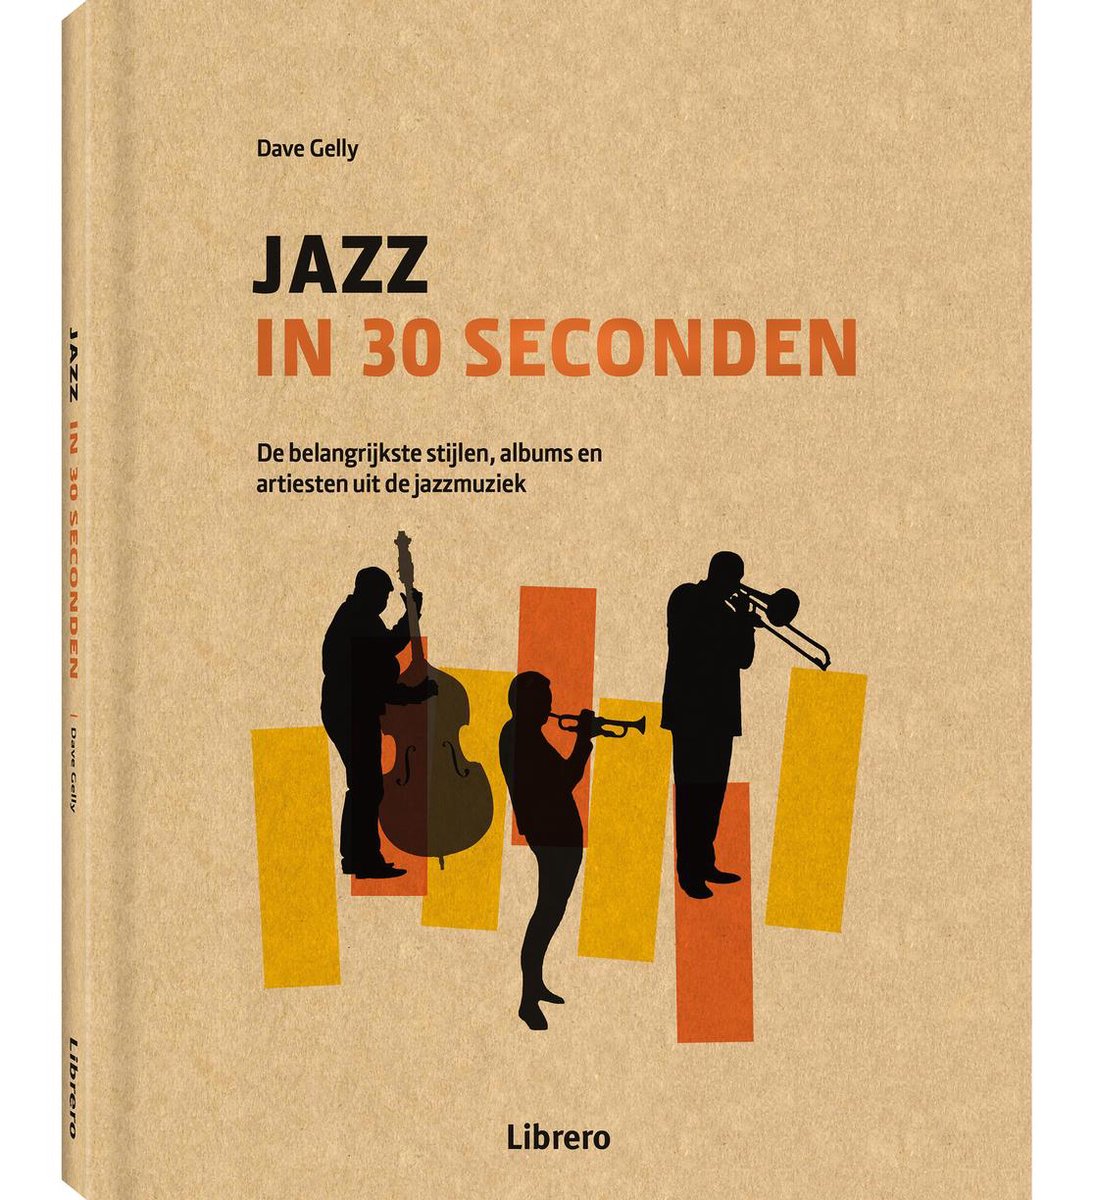 Jazz in 30 seconden